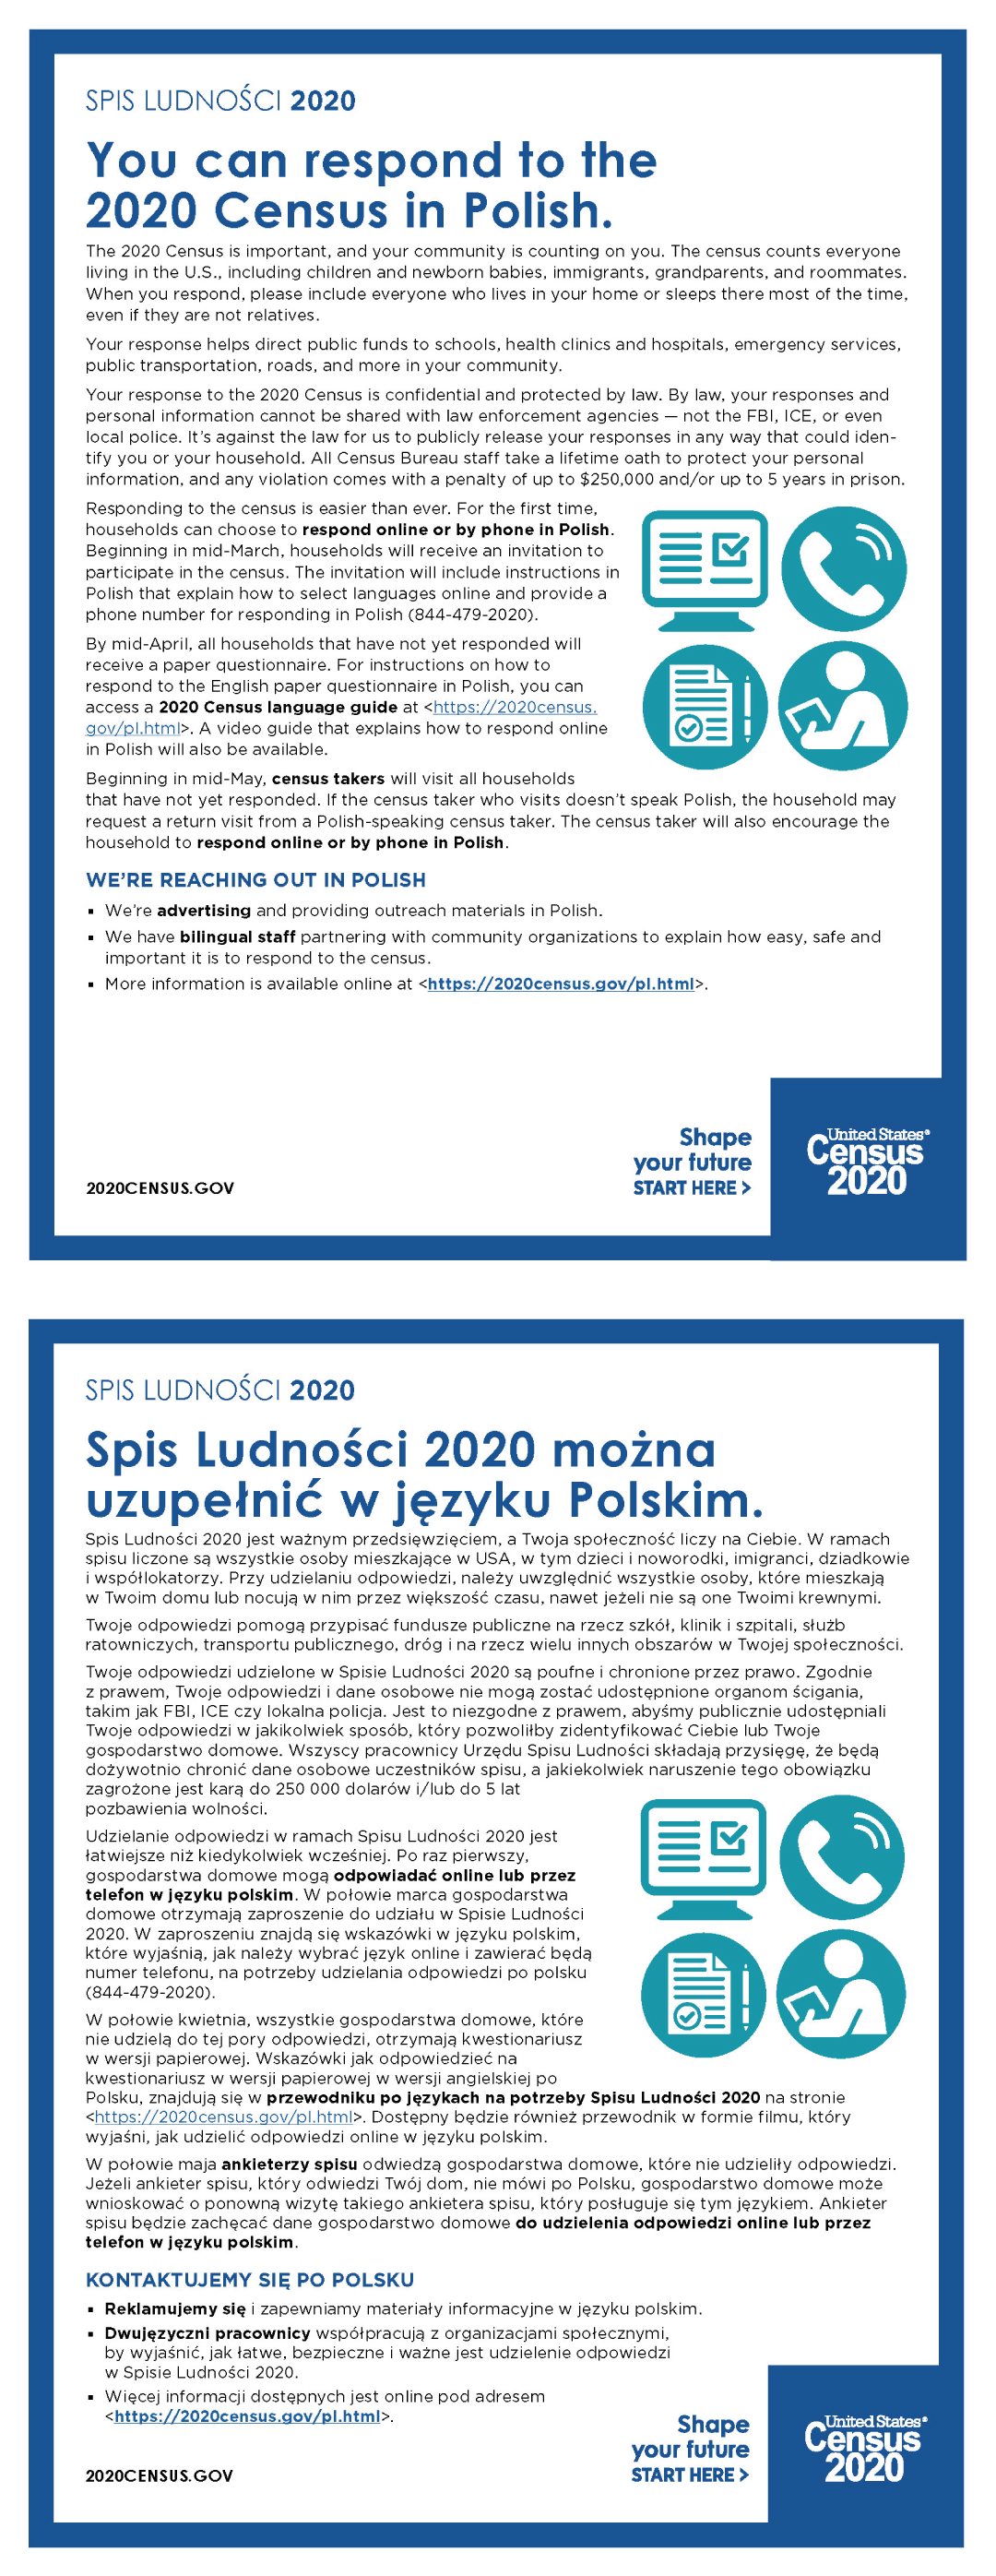 You can respond to the 2020 Census in Polish. (Spis Ludności 2020 można uzupełnić w języku Polskim.)